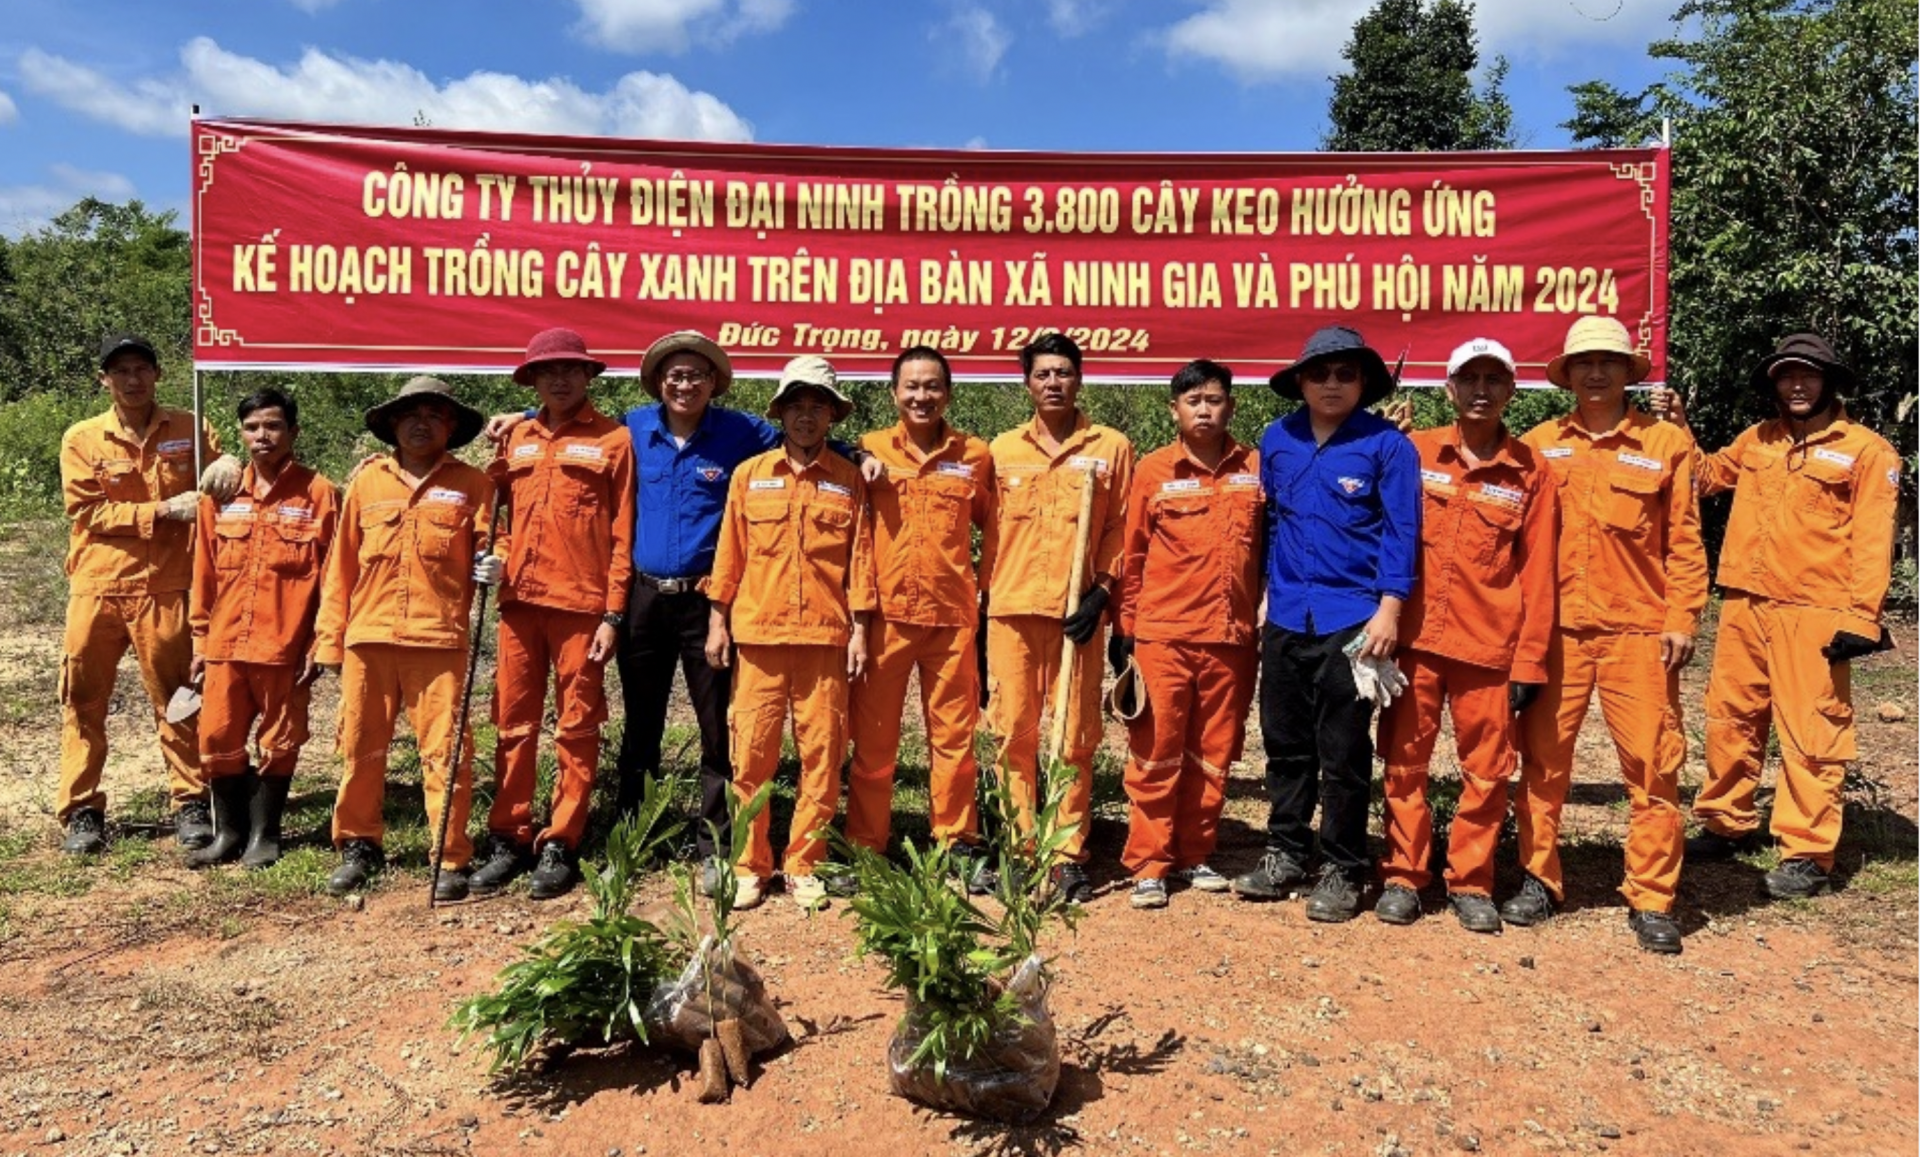 
Đoàn viên thanh niên Công ty tham gia trồng cây xanh
